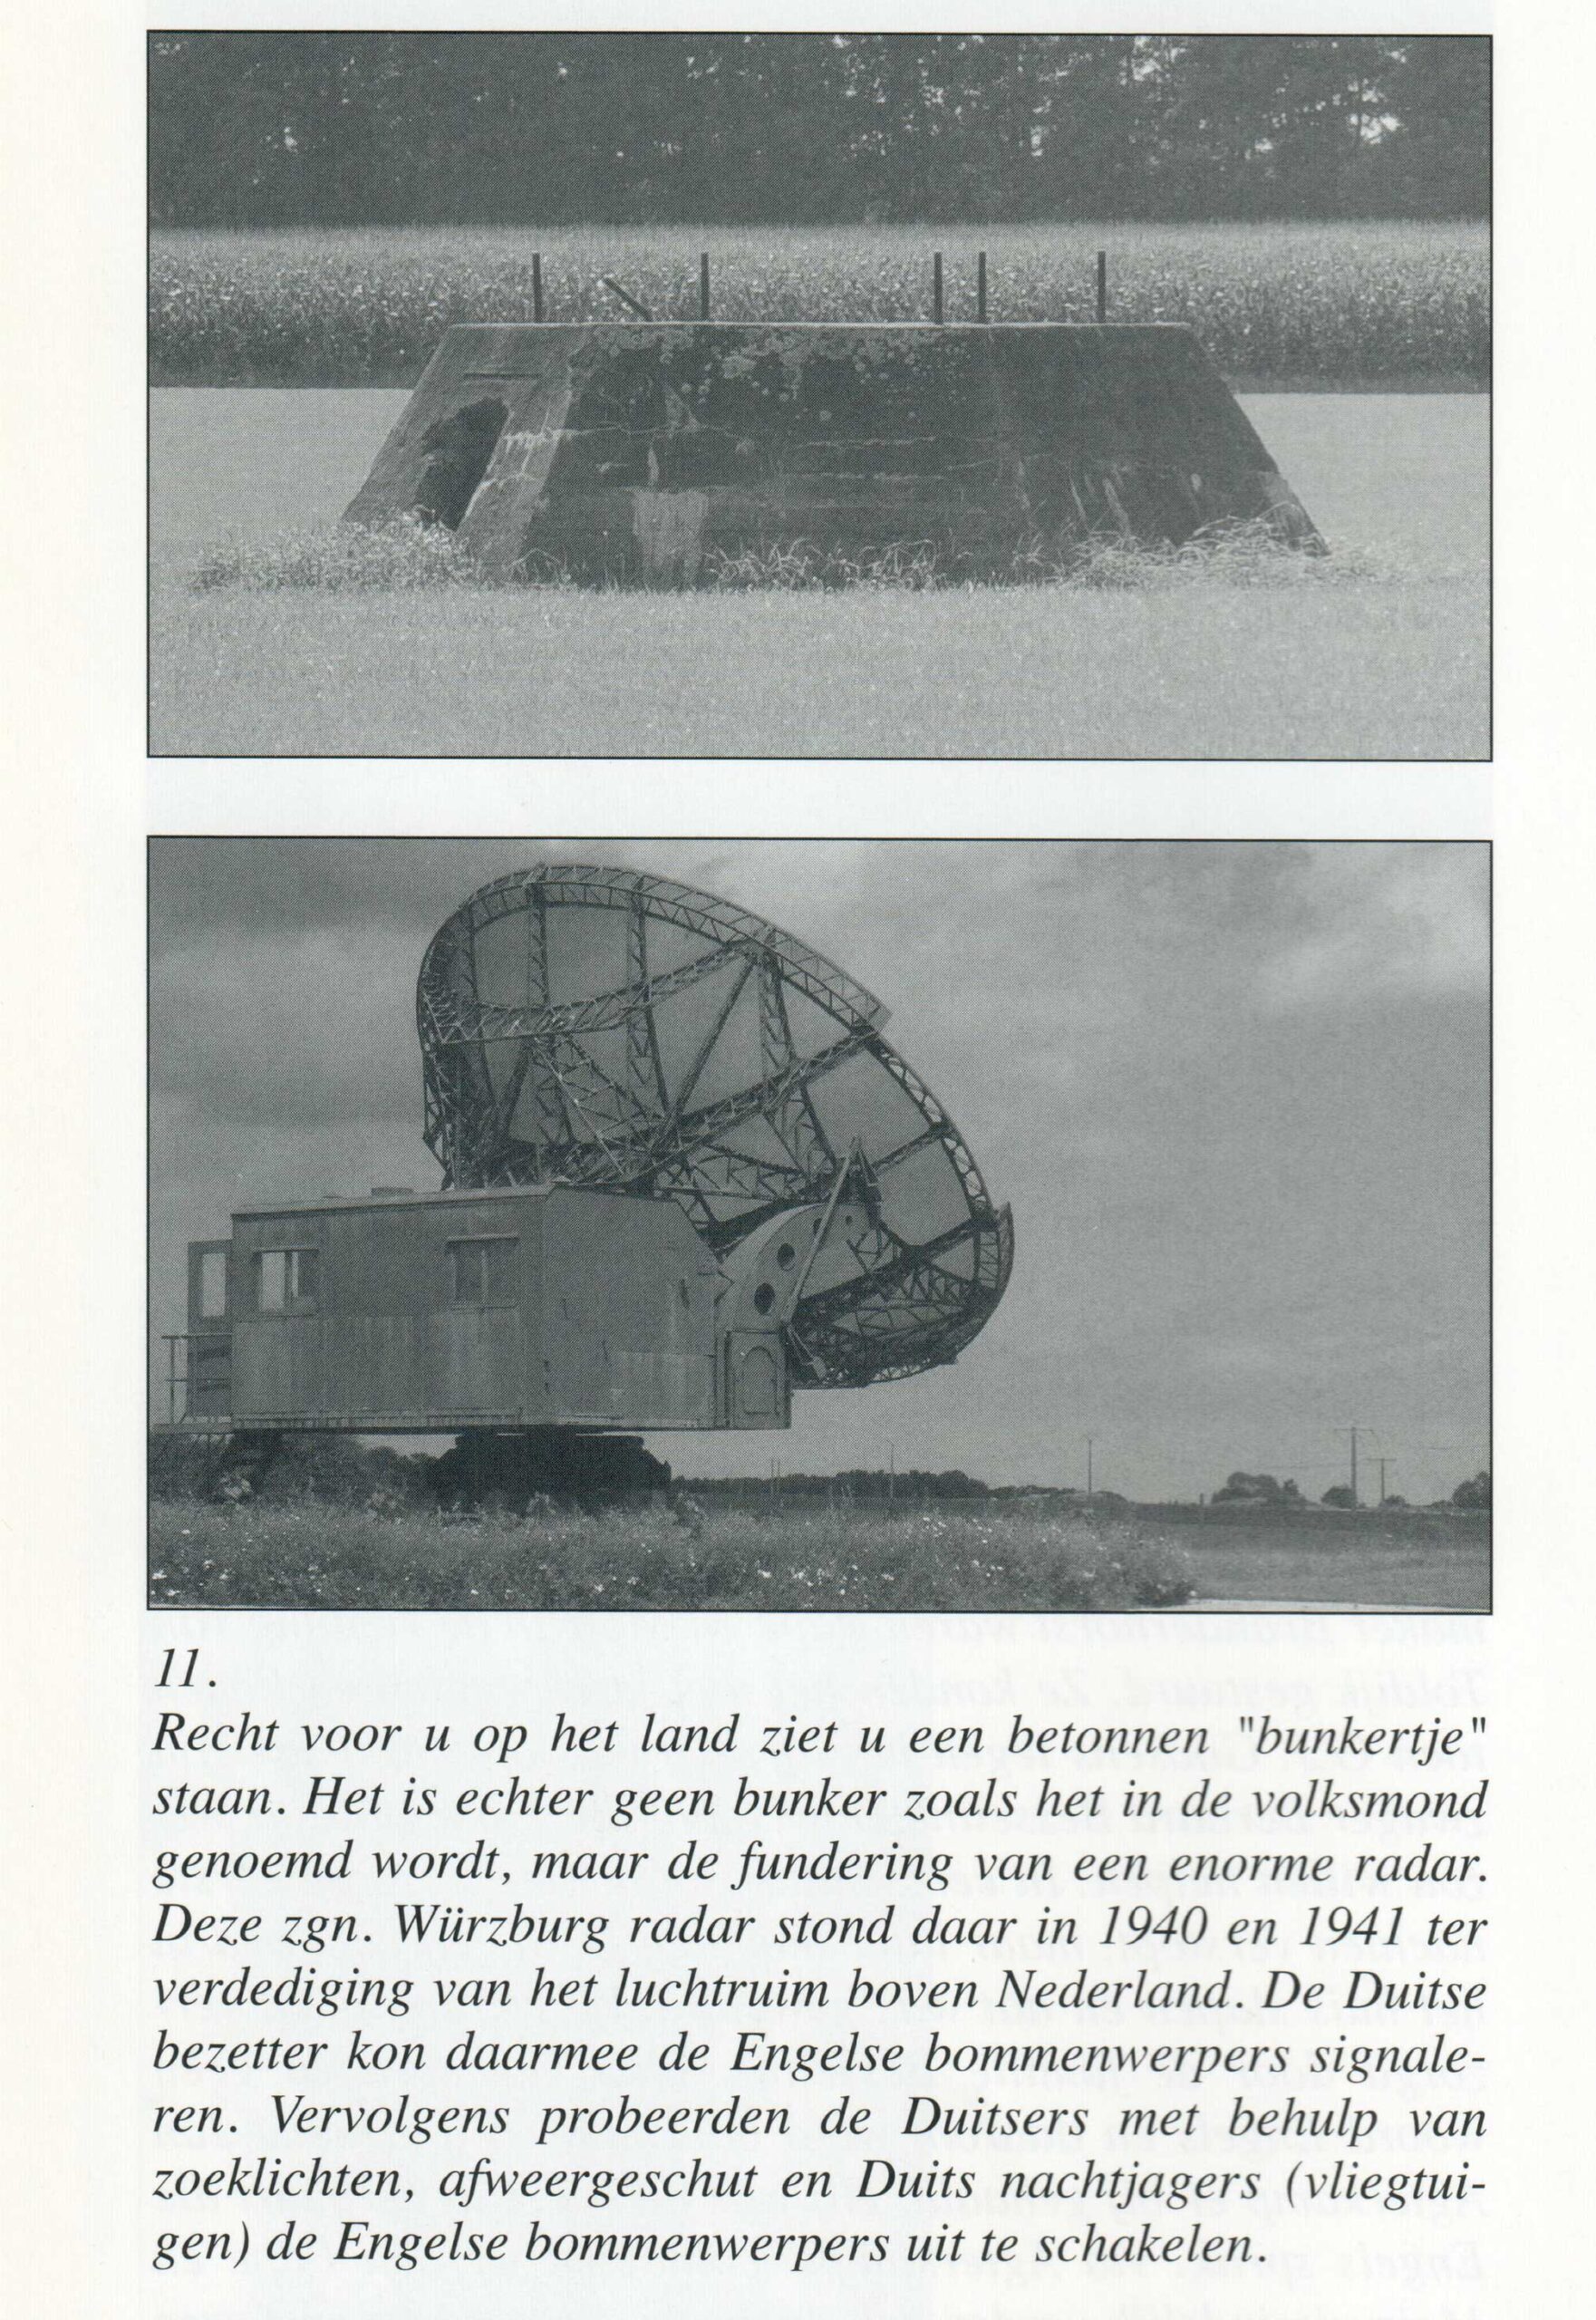 Toldijk Hoogstraat/Beekstraat Radarinstallatie